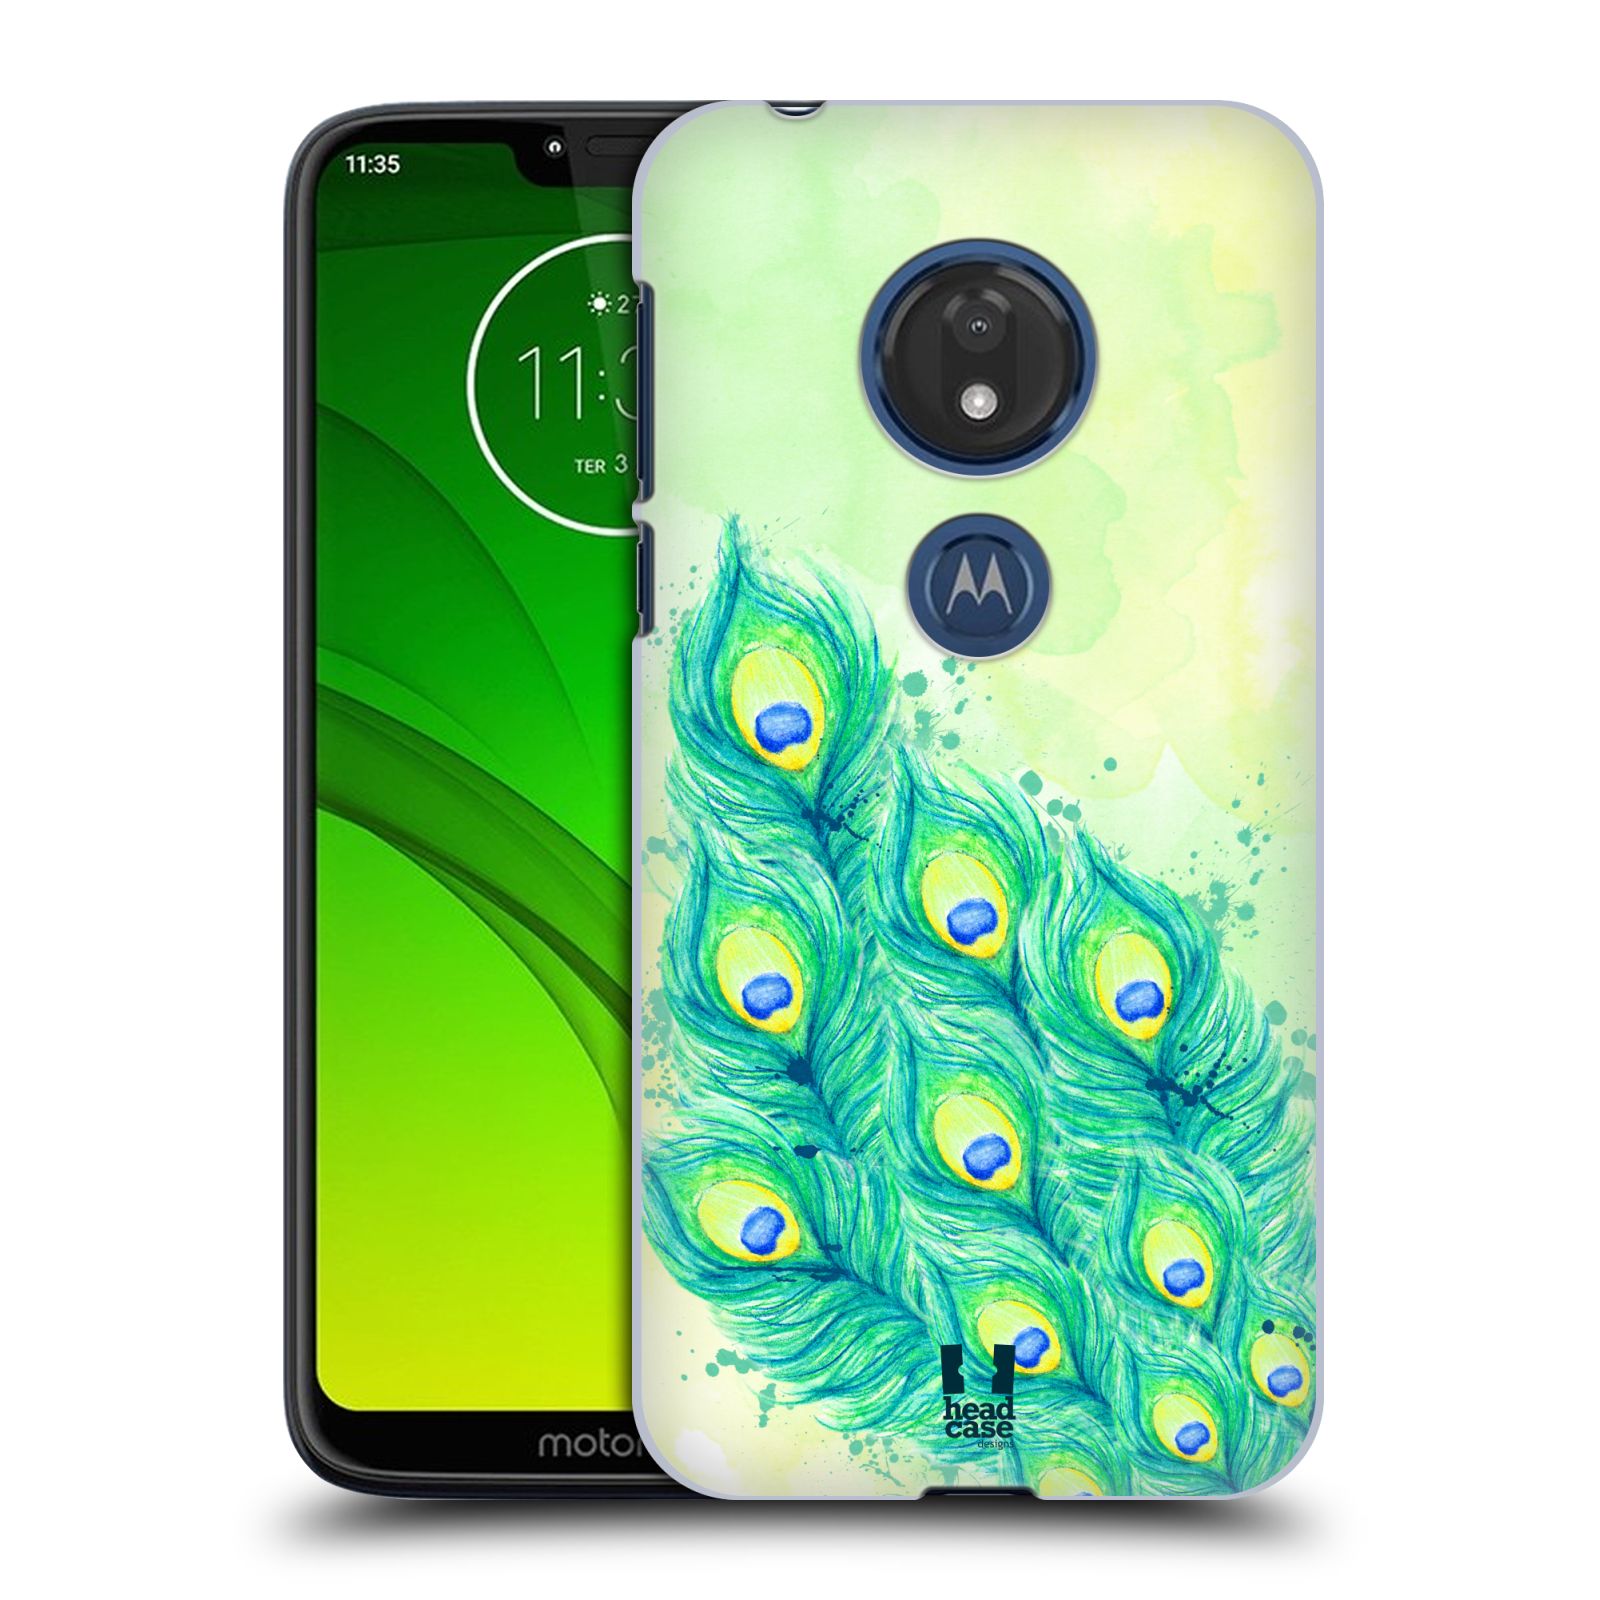 Pouzdro na mobil Motorola Moto G7 Play vzor Paví pírka barevná MODRÁ A ZELENÁ